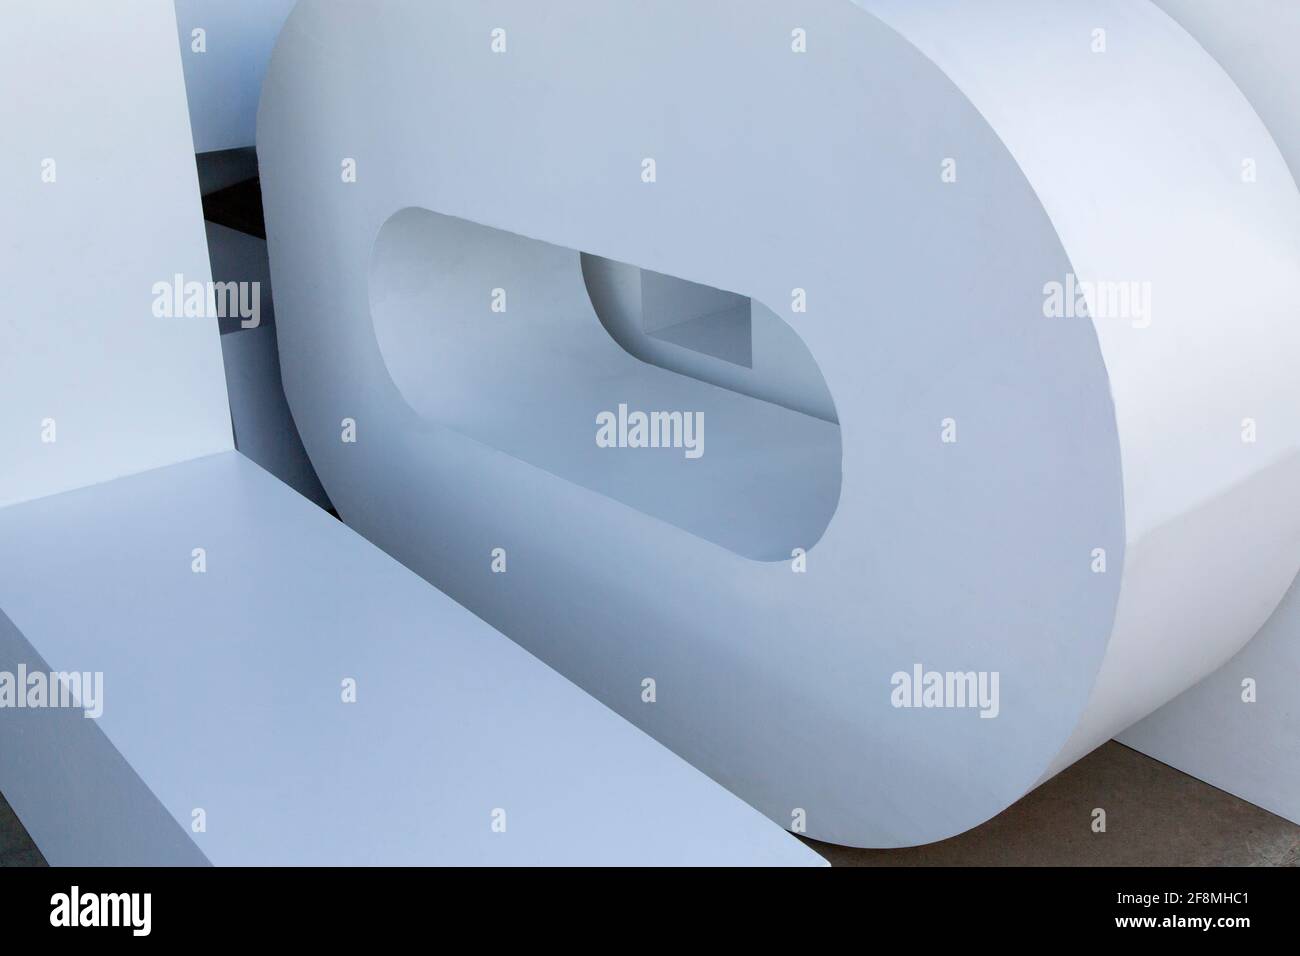 Lettere alfabetiche, che combinano angoli e curve. Foto Stock